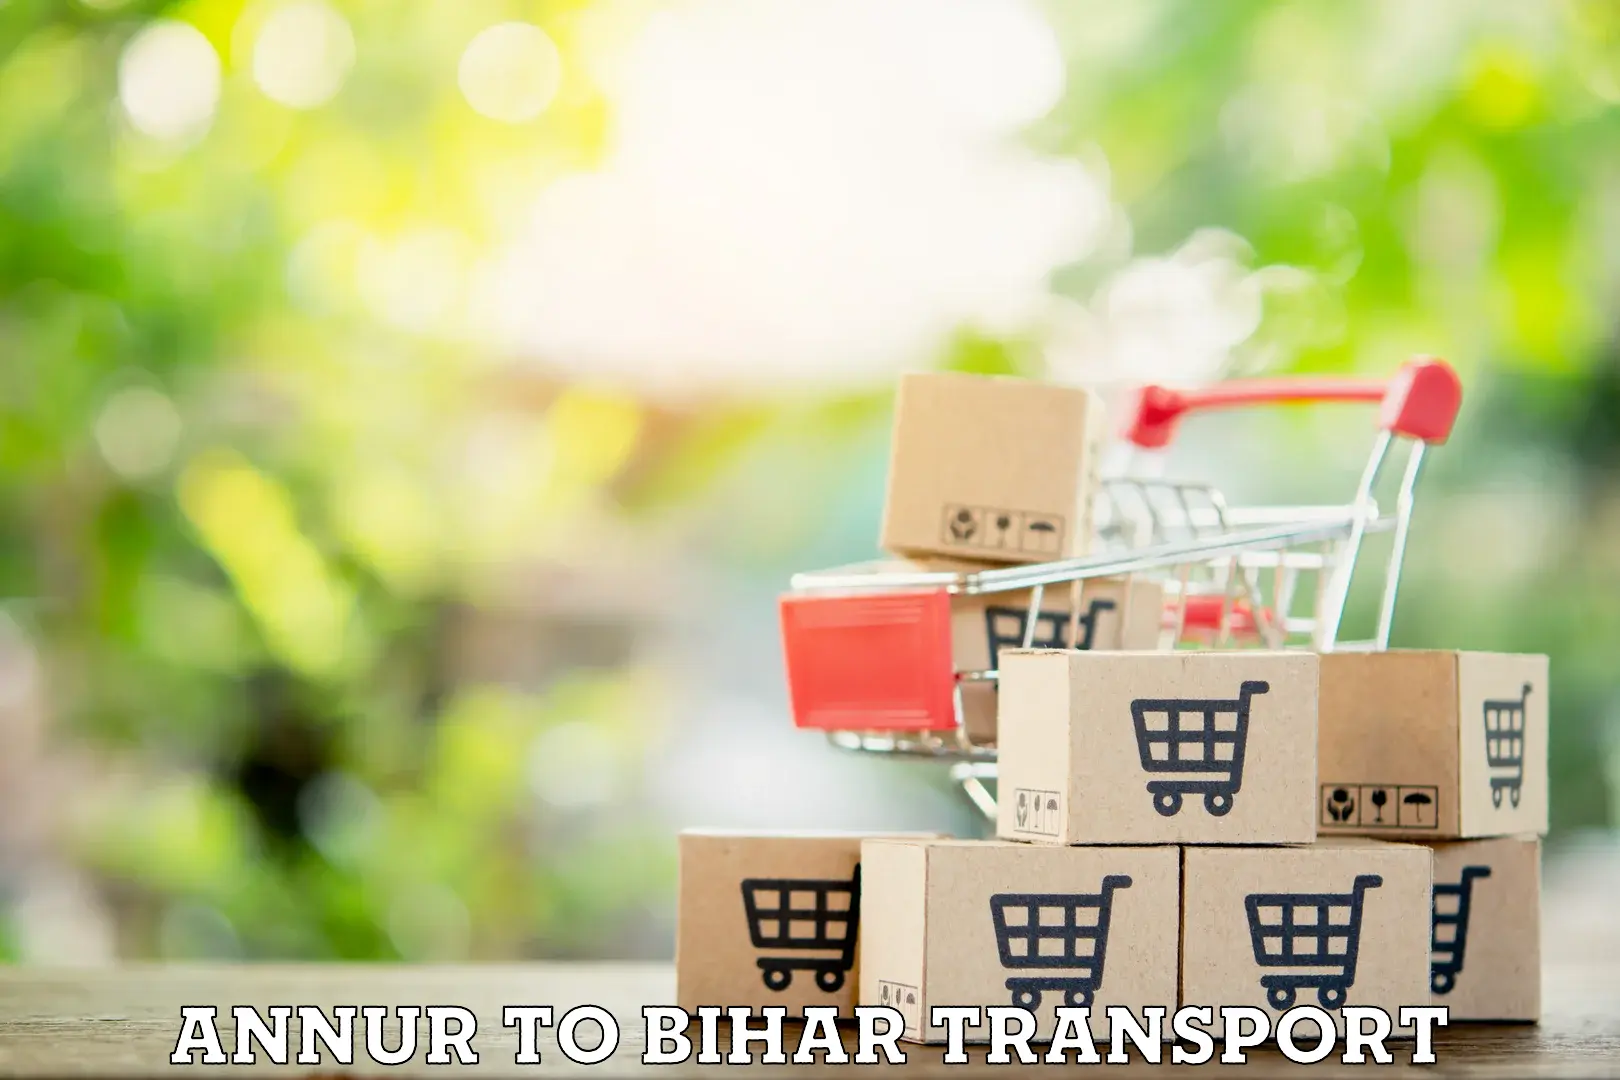 Online transport service Annur to Bihar